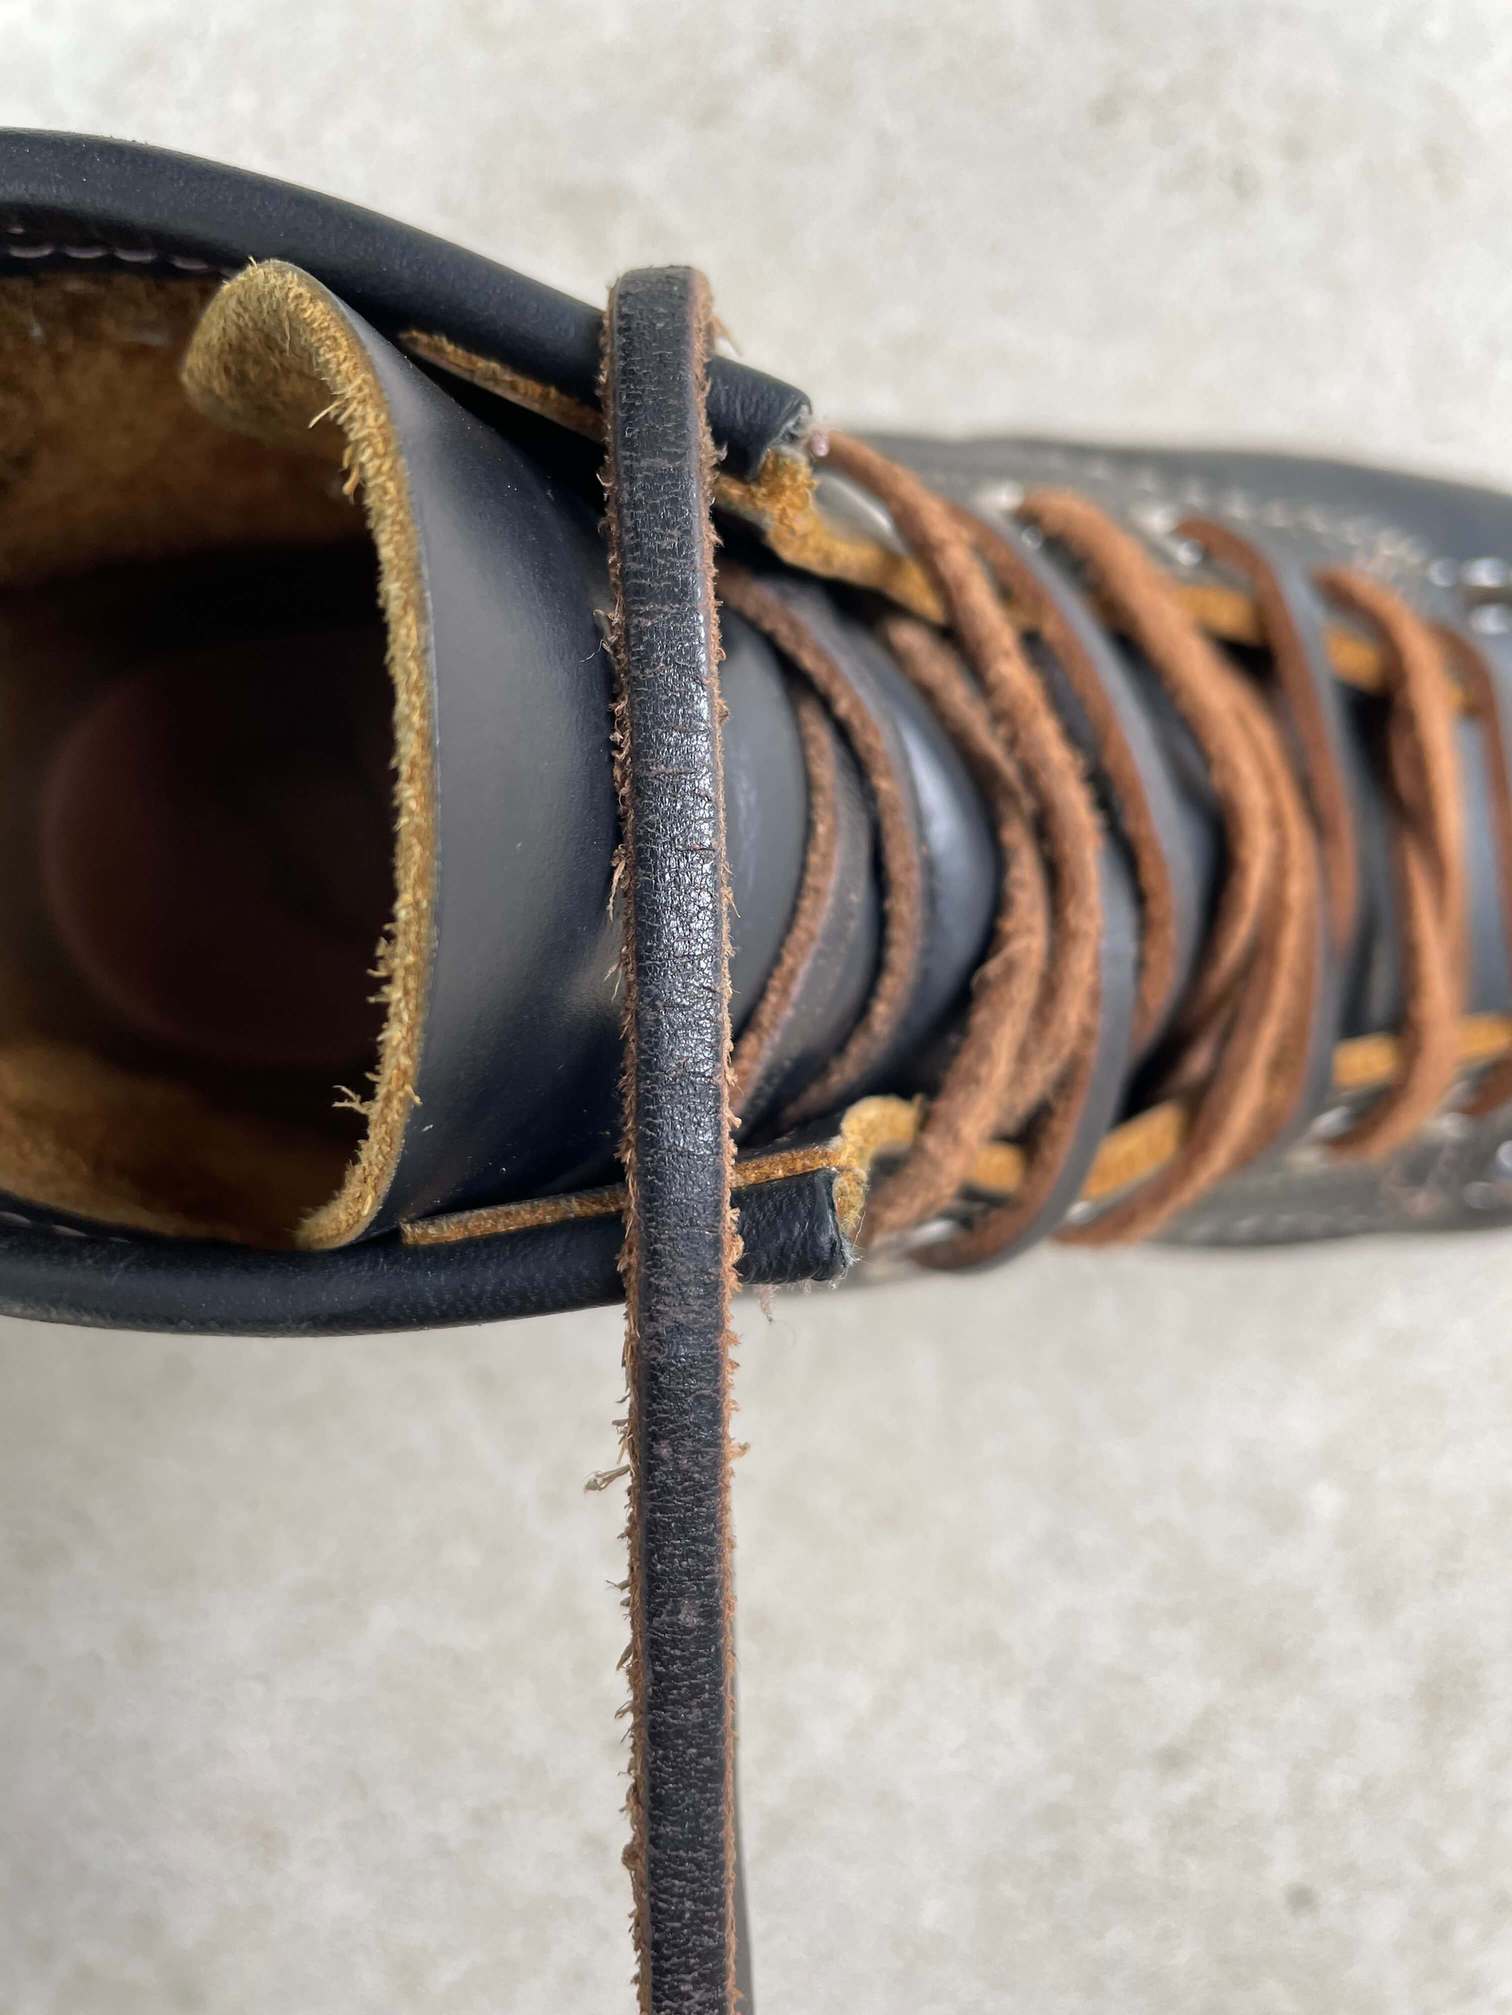 クロムエクセルレザーの靴紐の経年変化 茶芯